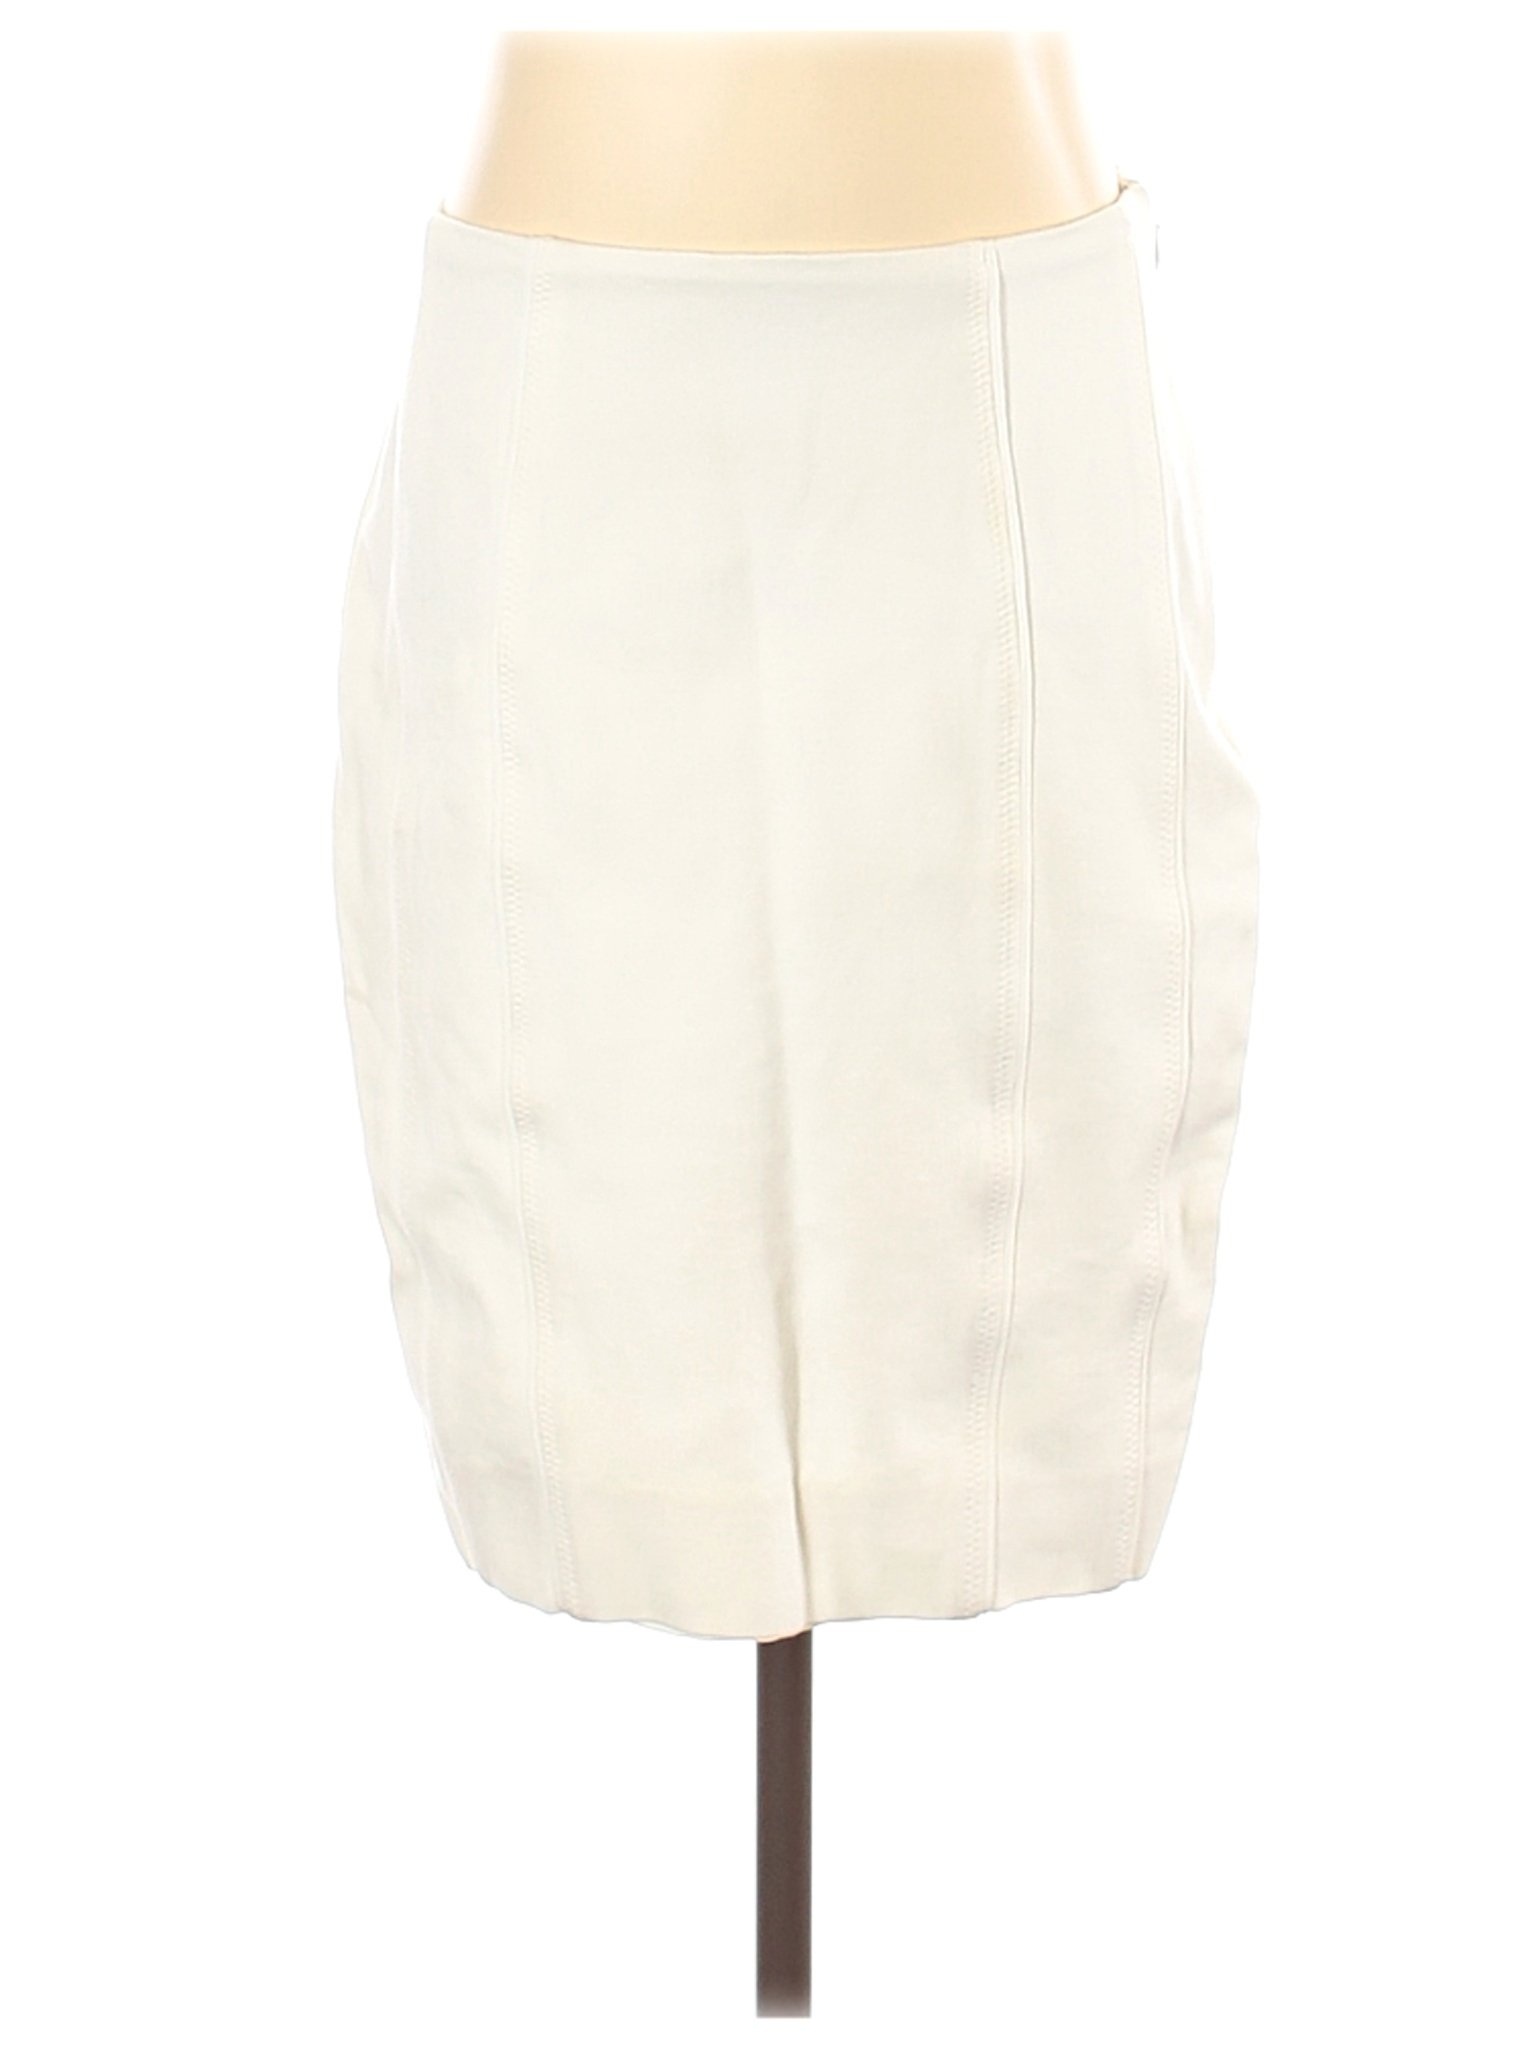 White House Black Market Women Ivory Casual Skirt 00 | eBay